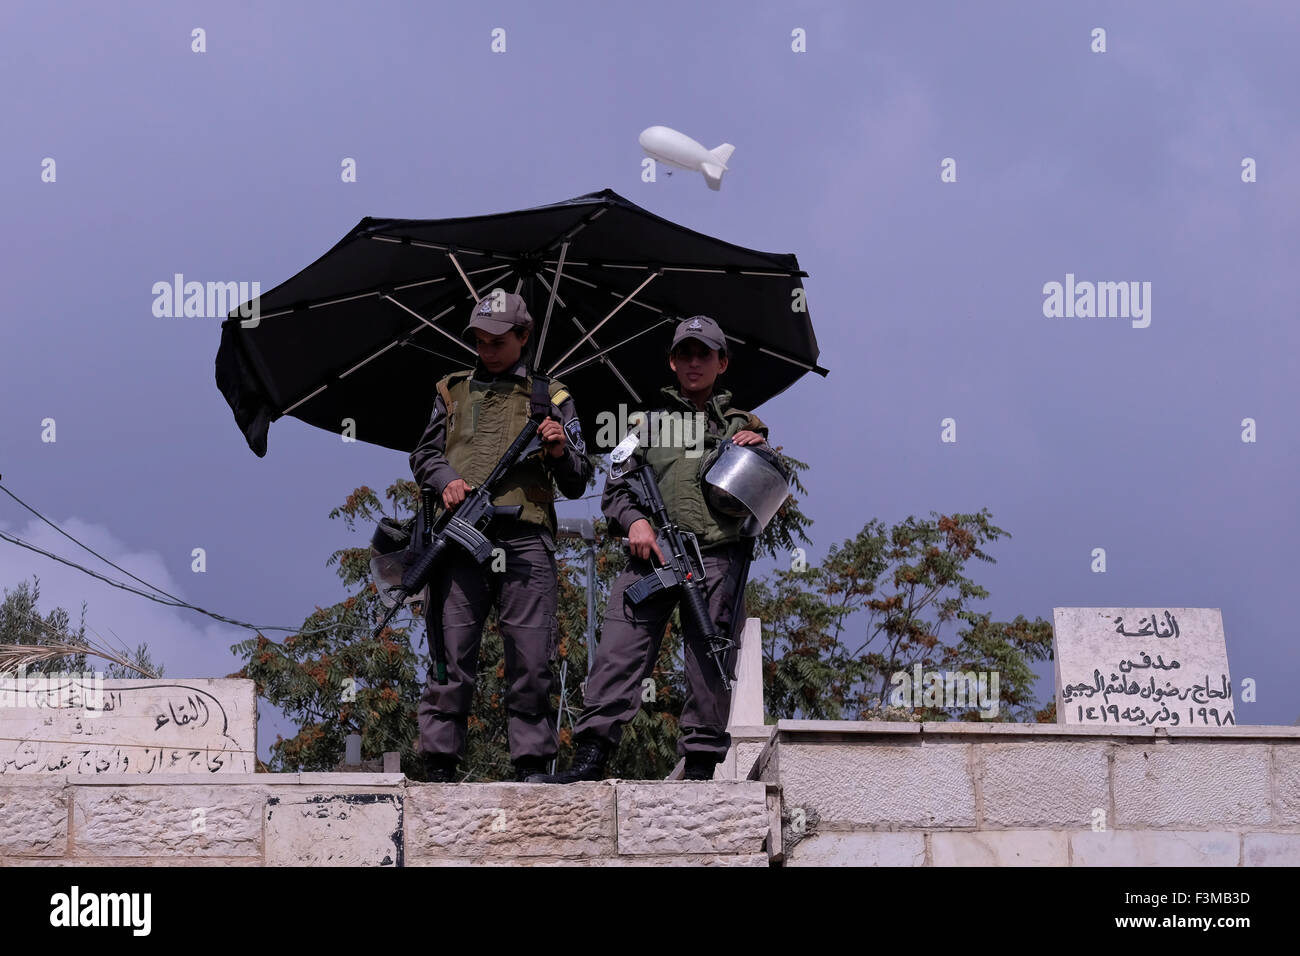 Una sorveglianza di polizia palloncino volare oltre israeliano soldati femmina permanente sulla guardia nel quartiere musulmano della città vecchia di Gerusalemme Israele Foto Stock